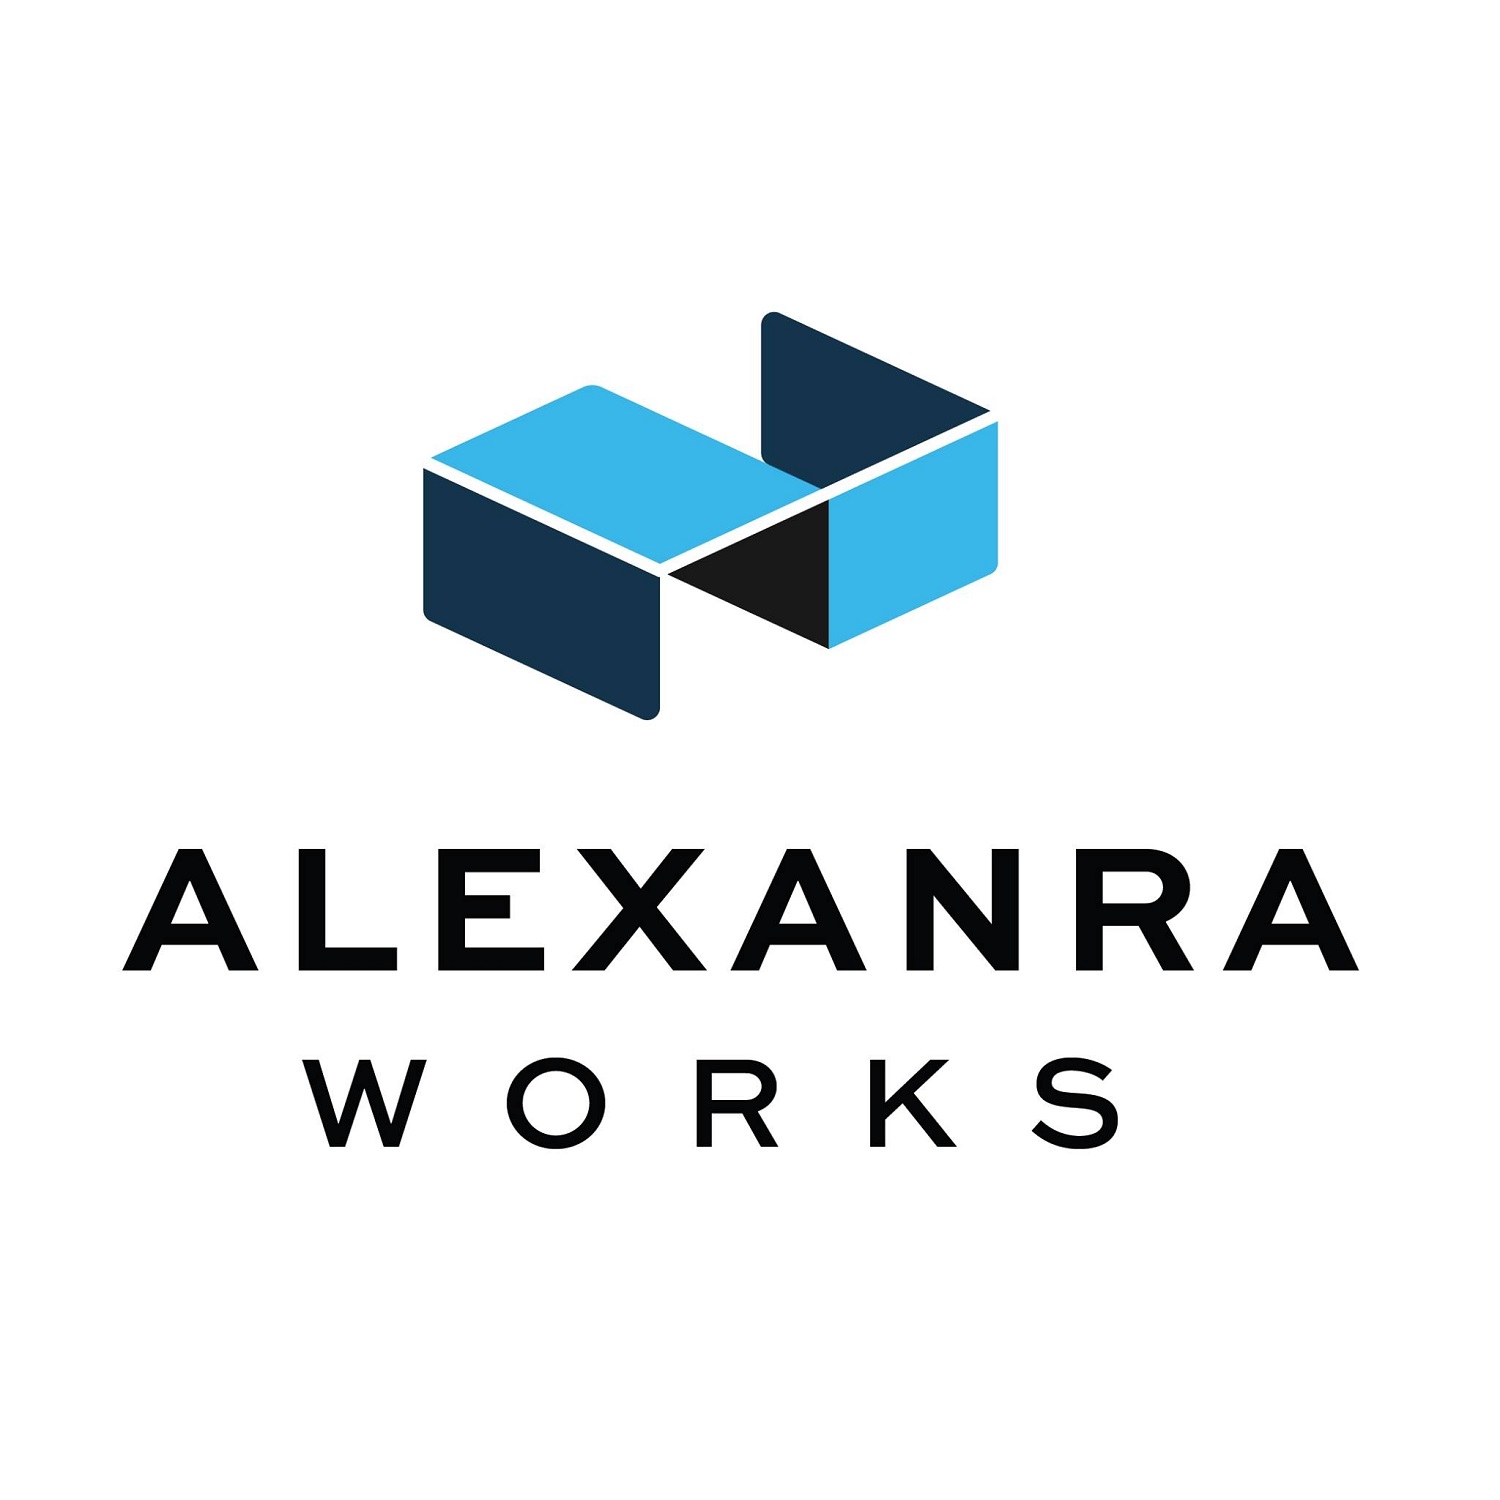 Alexanra Works